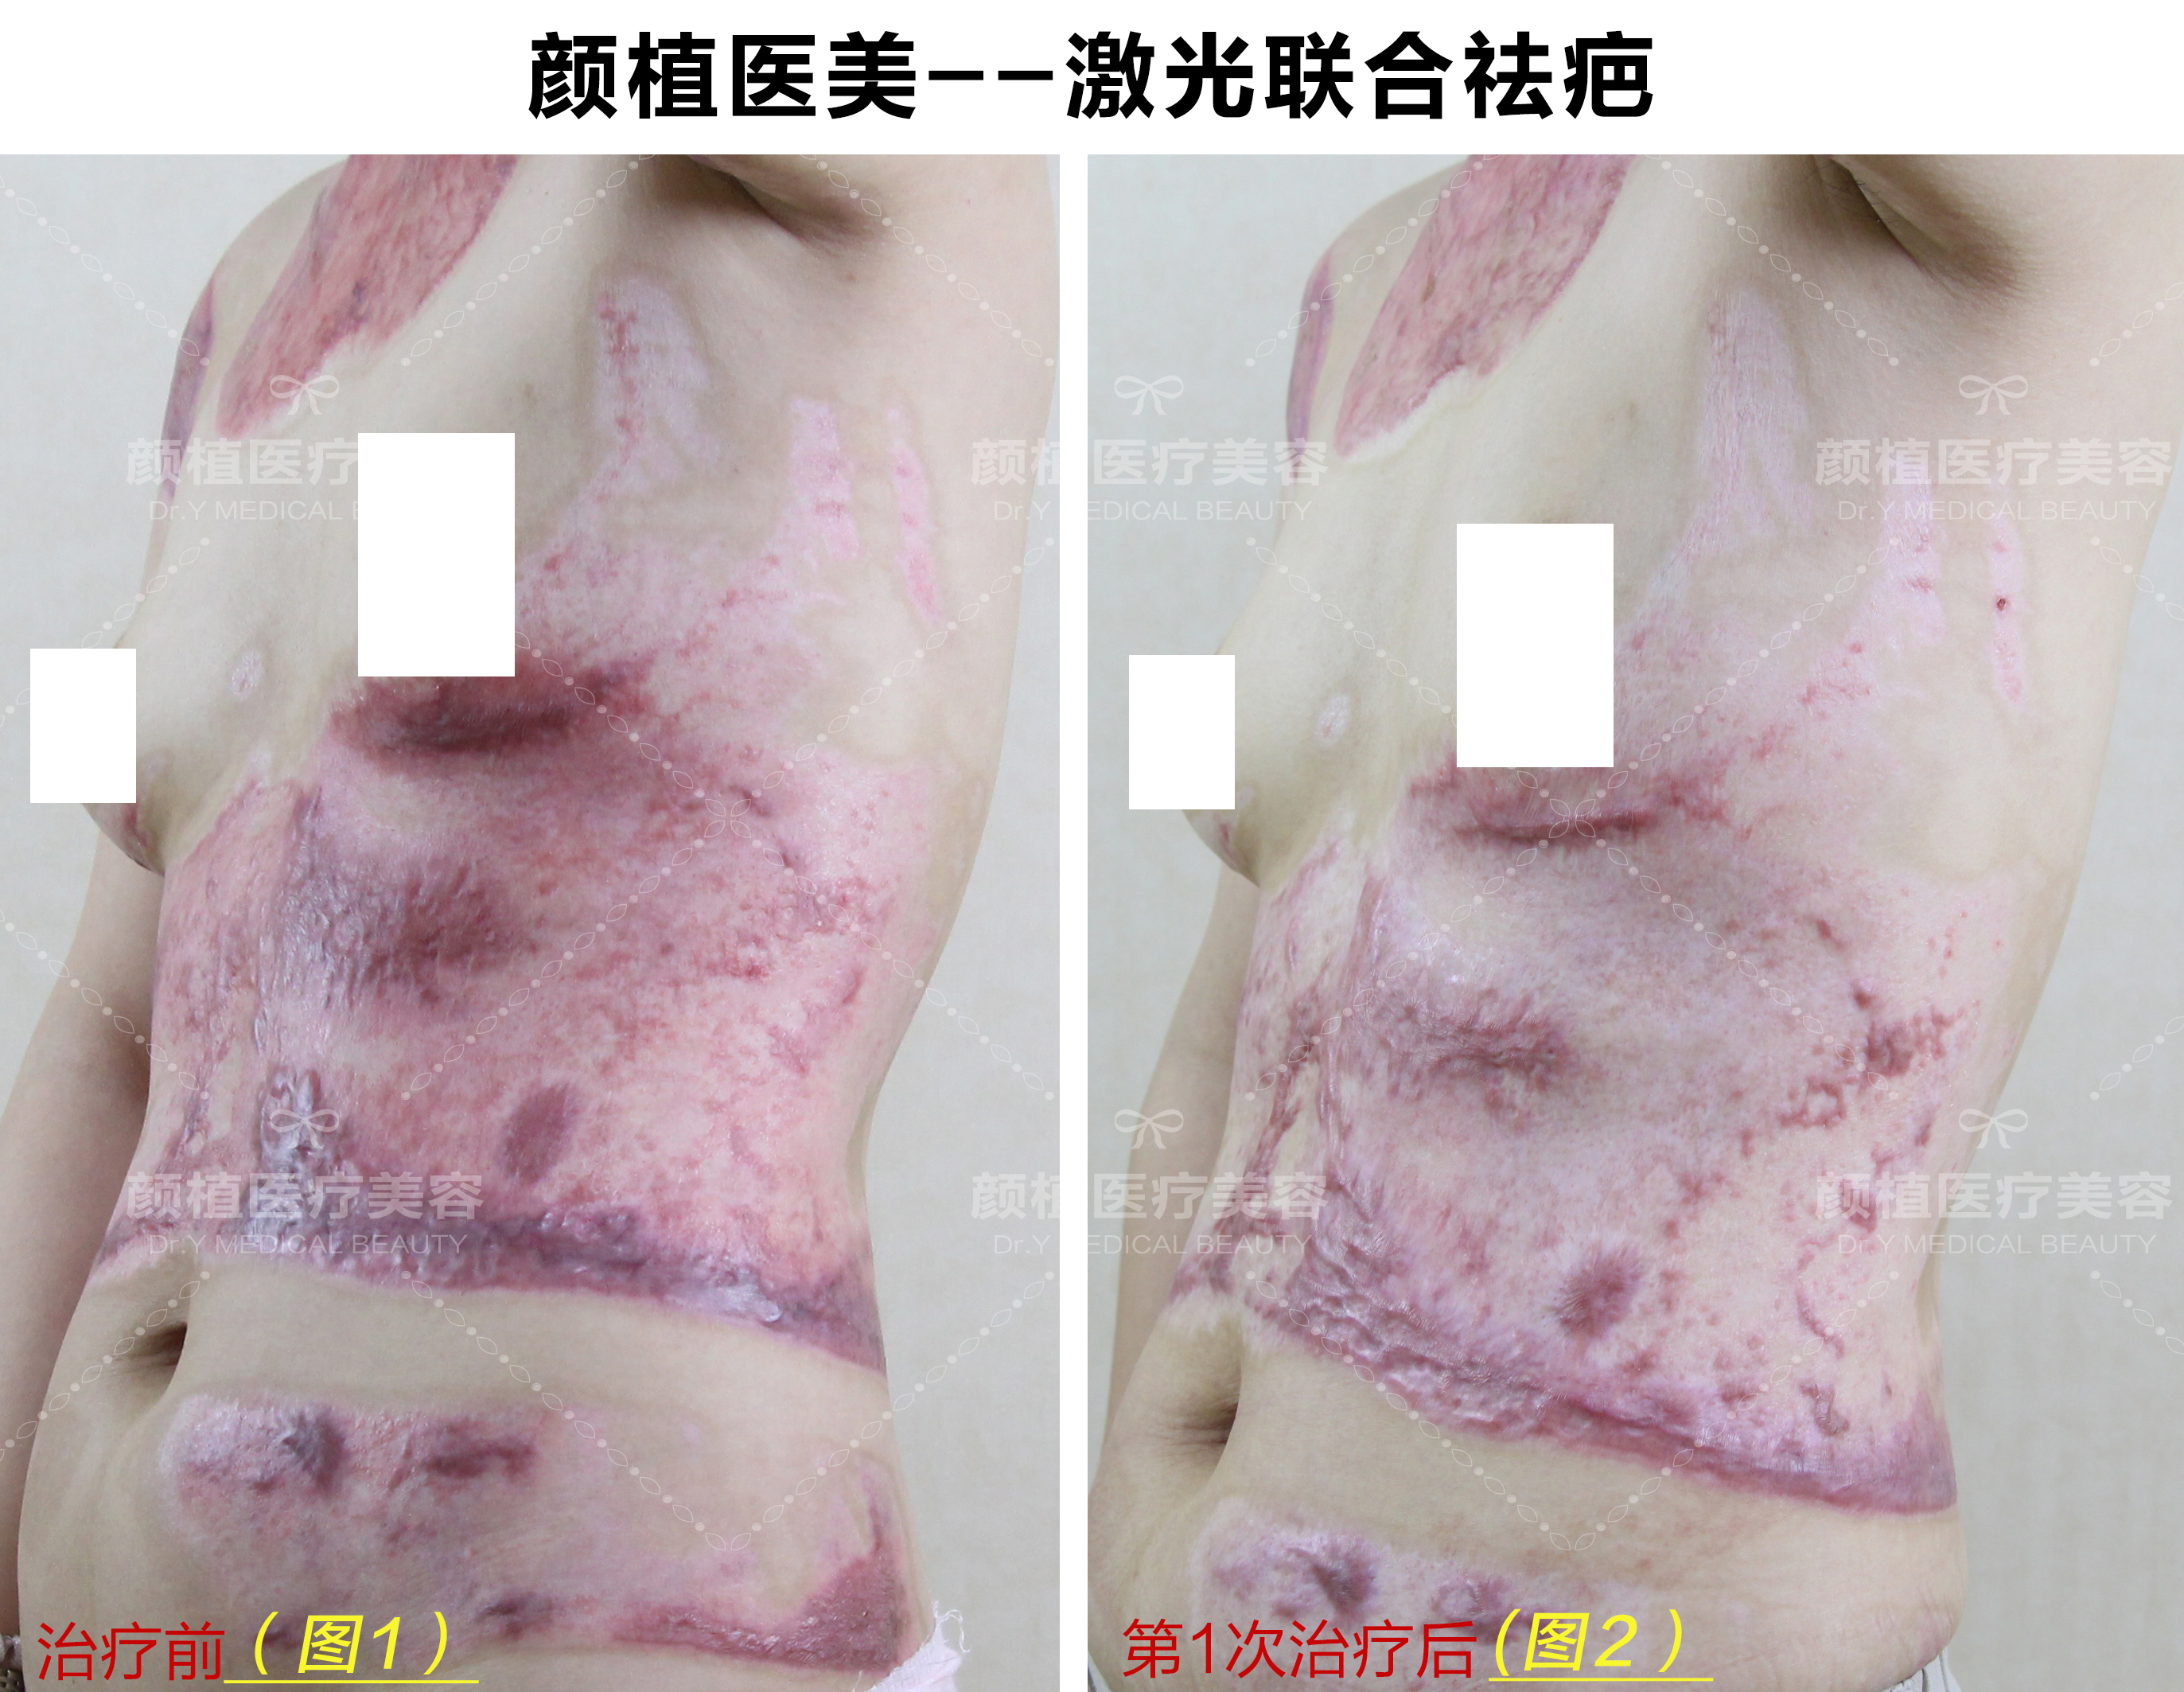 烫伤(图1),老公带其四处求医,都说除了手术植皮没有其他办法治疗皮肤